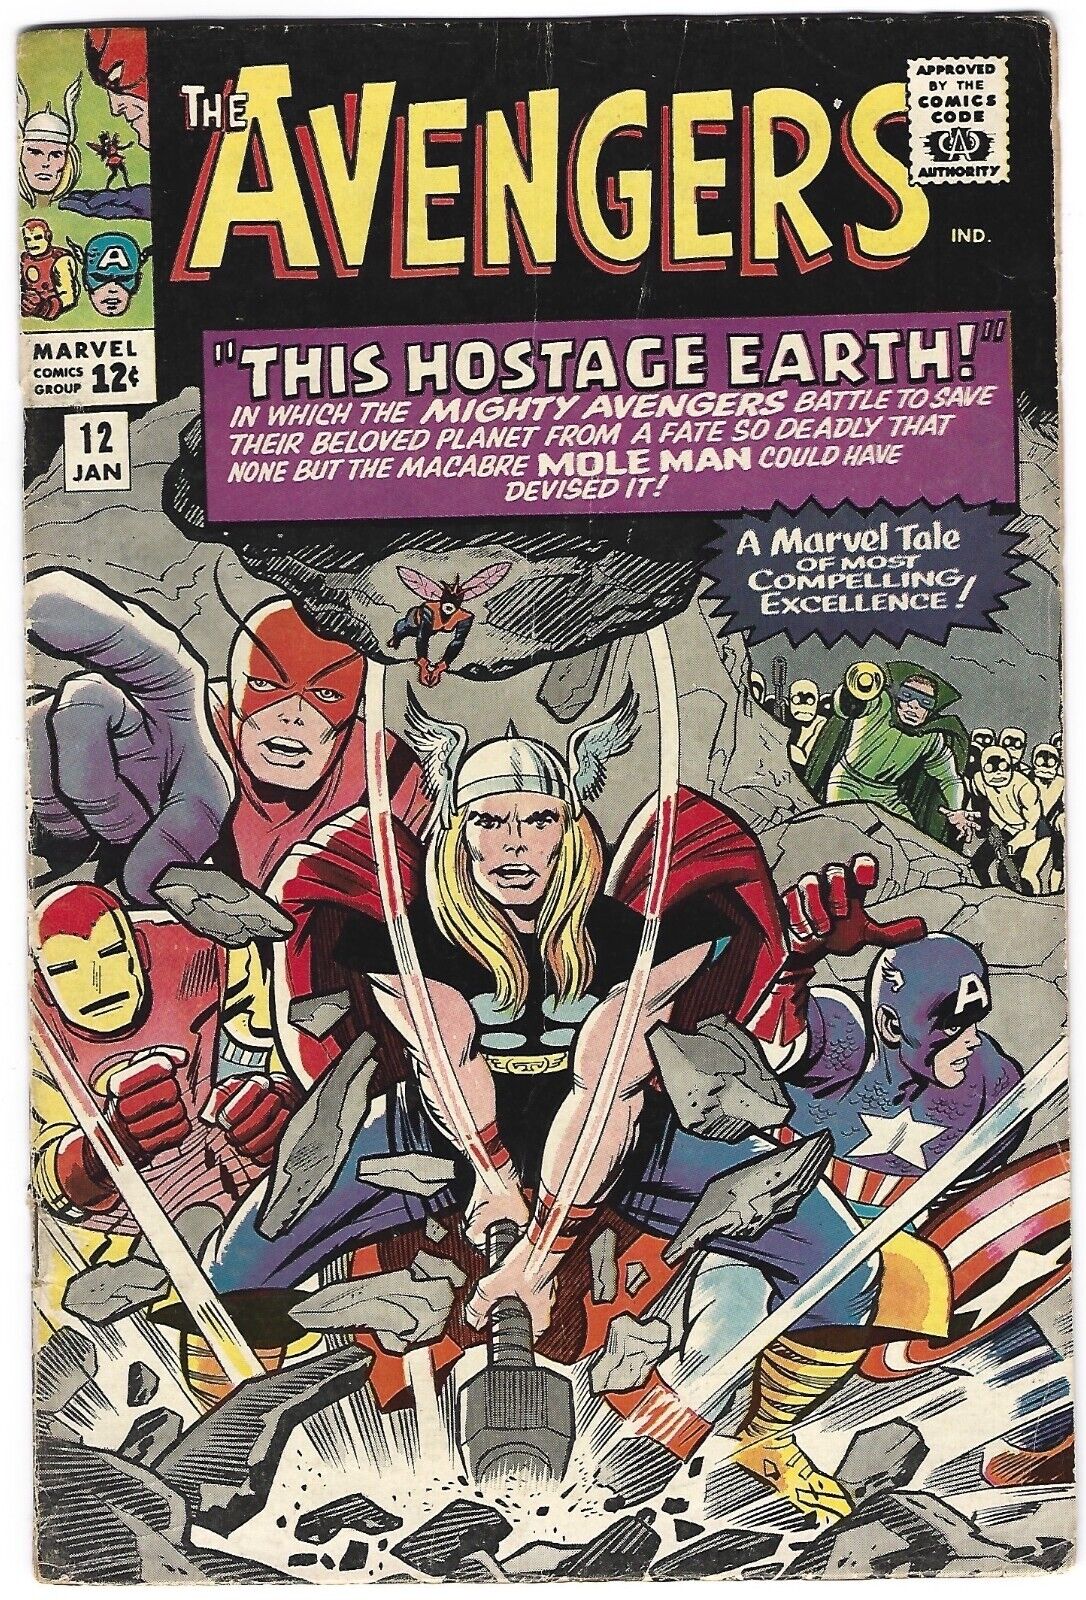 The Avengers V1 #12 Jan 1965